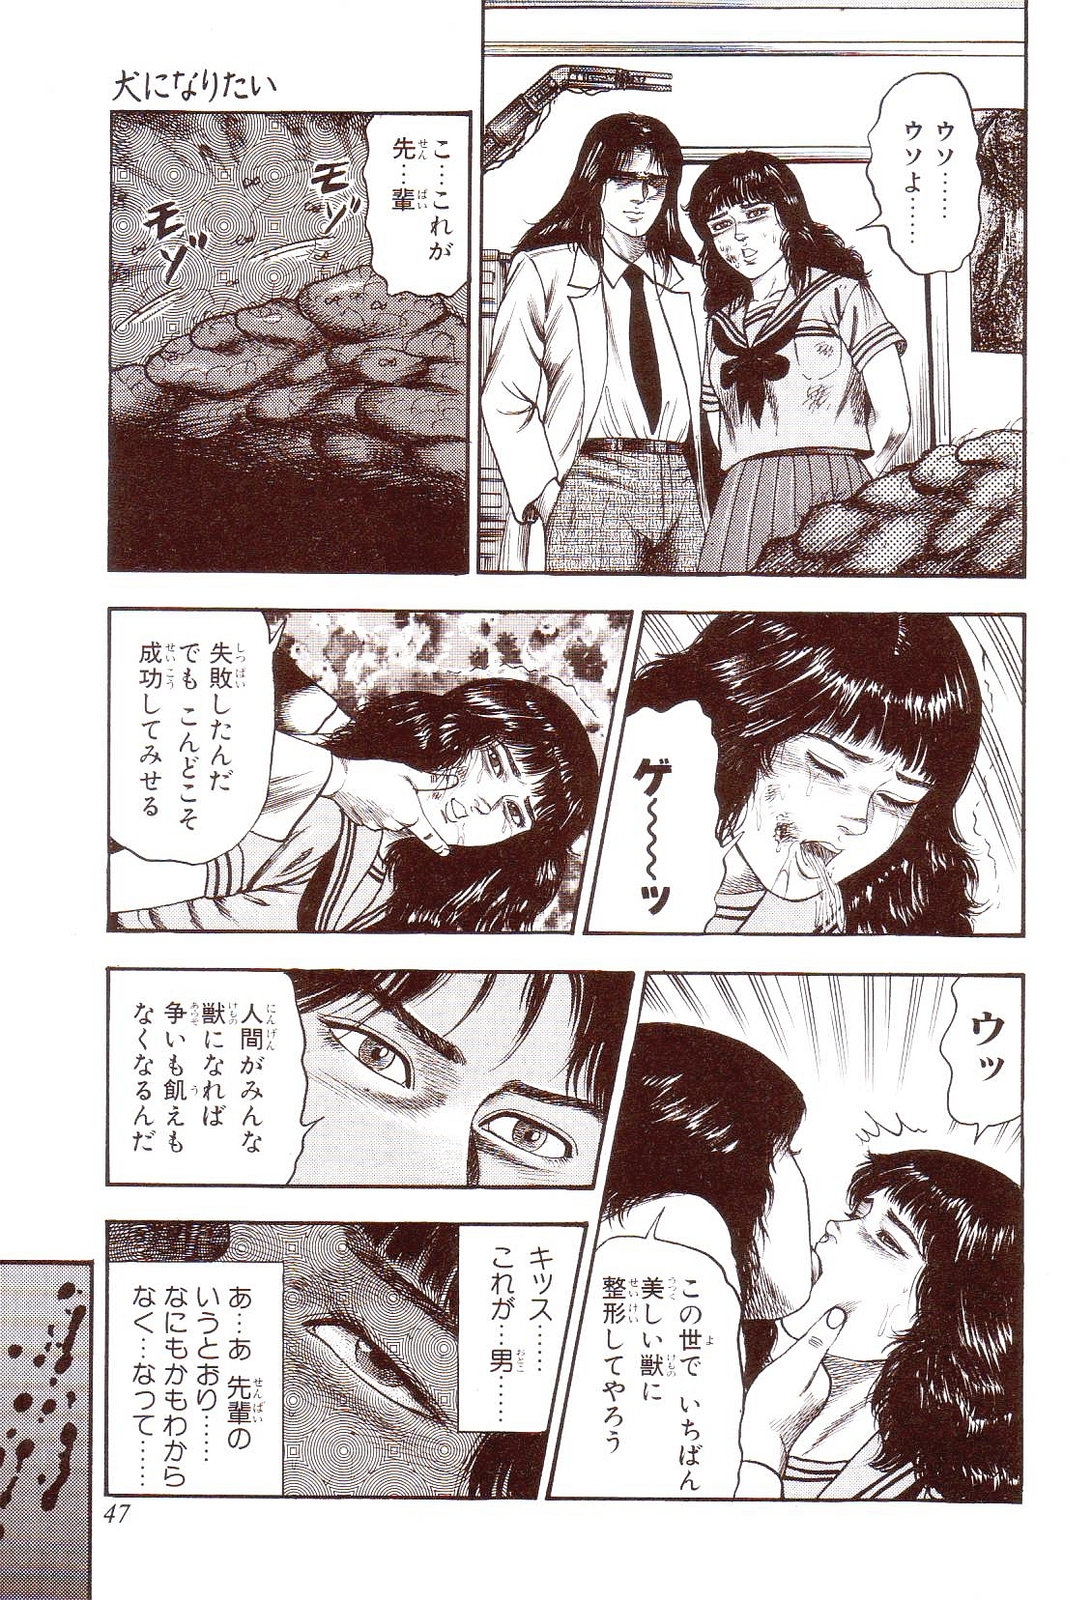 [Sanjou Tomomi] Inu ni Naritai -kyoufu manga shugyoku sakuhinshiyuu- 51